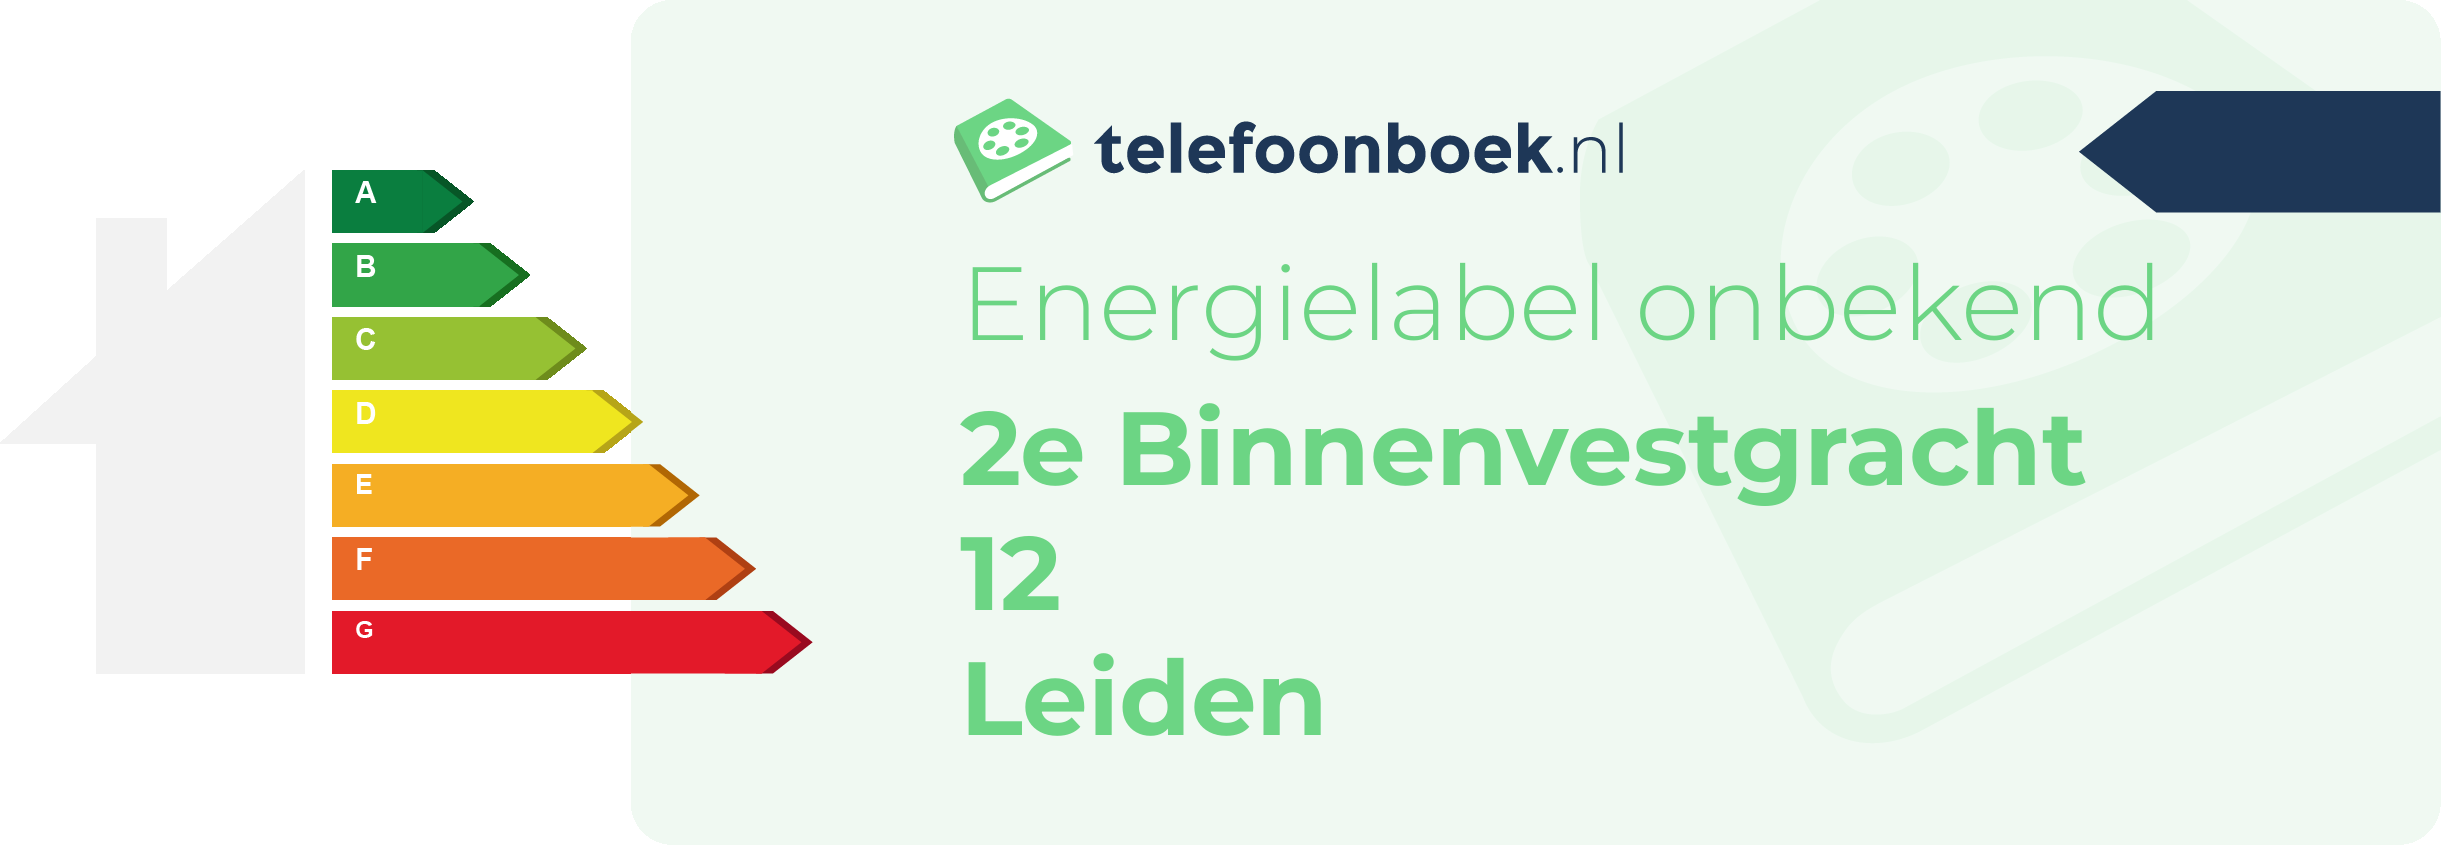 Energielabel 2e Binnenvestgracht 12 Leiden